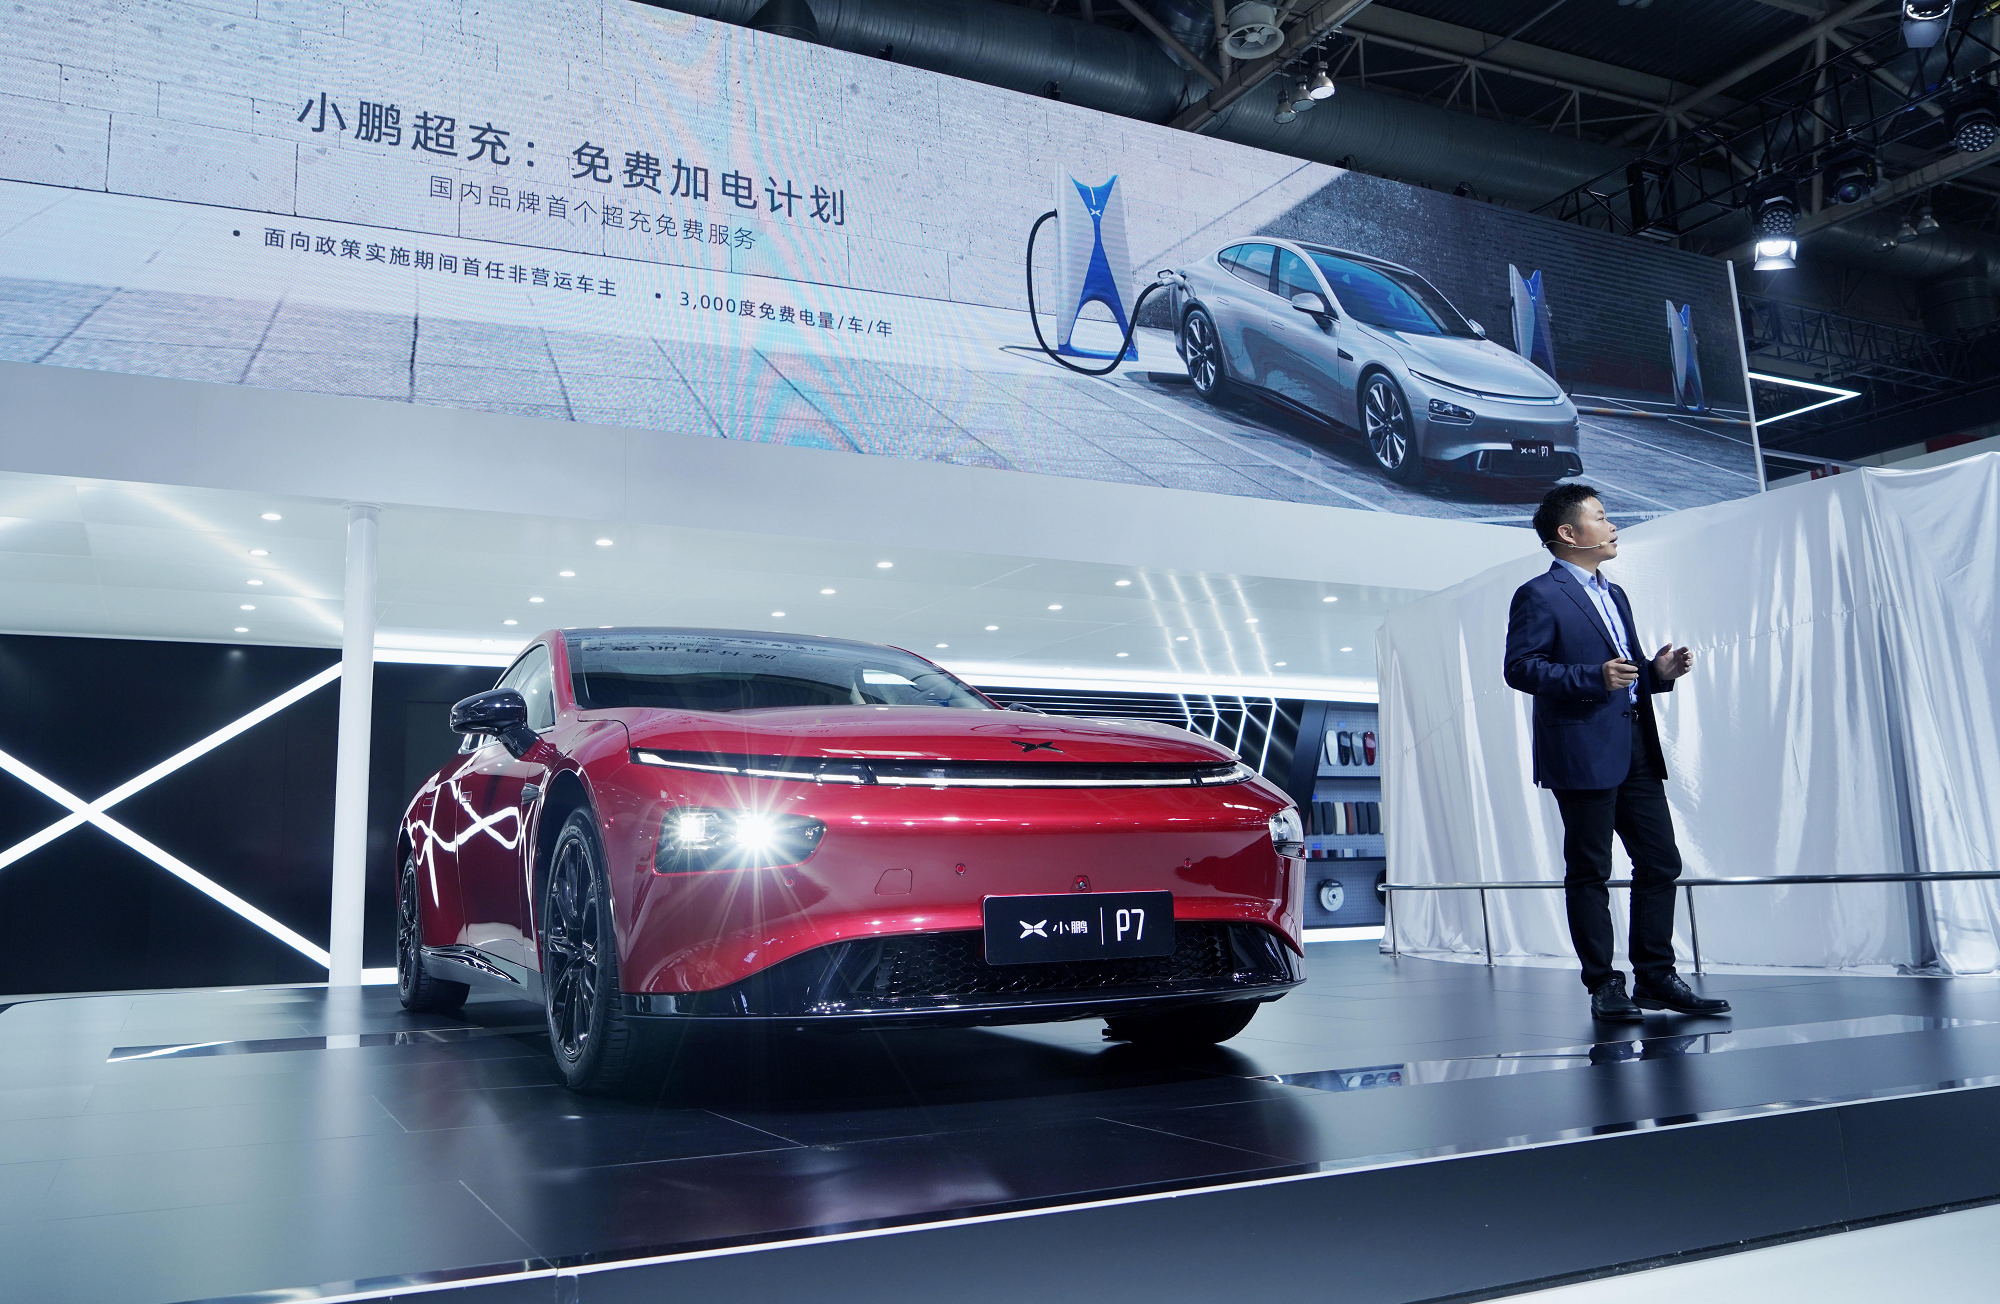 超充免费、电池租赁，小鹏汽车北京车展发布多项优惠